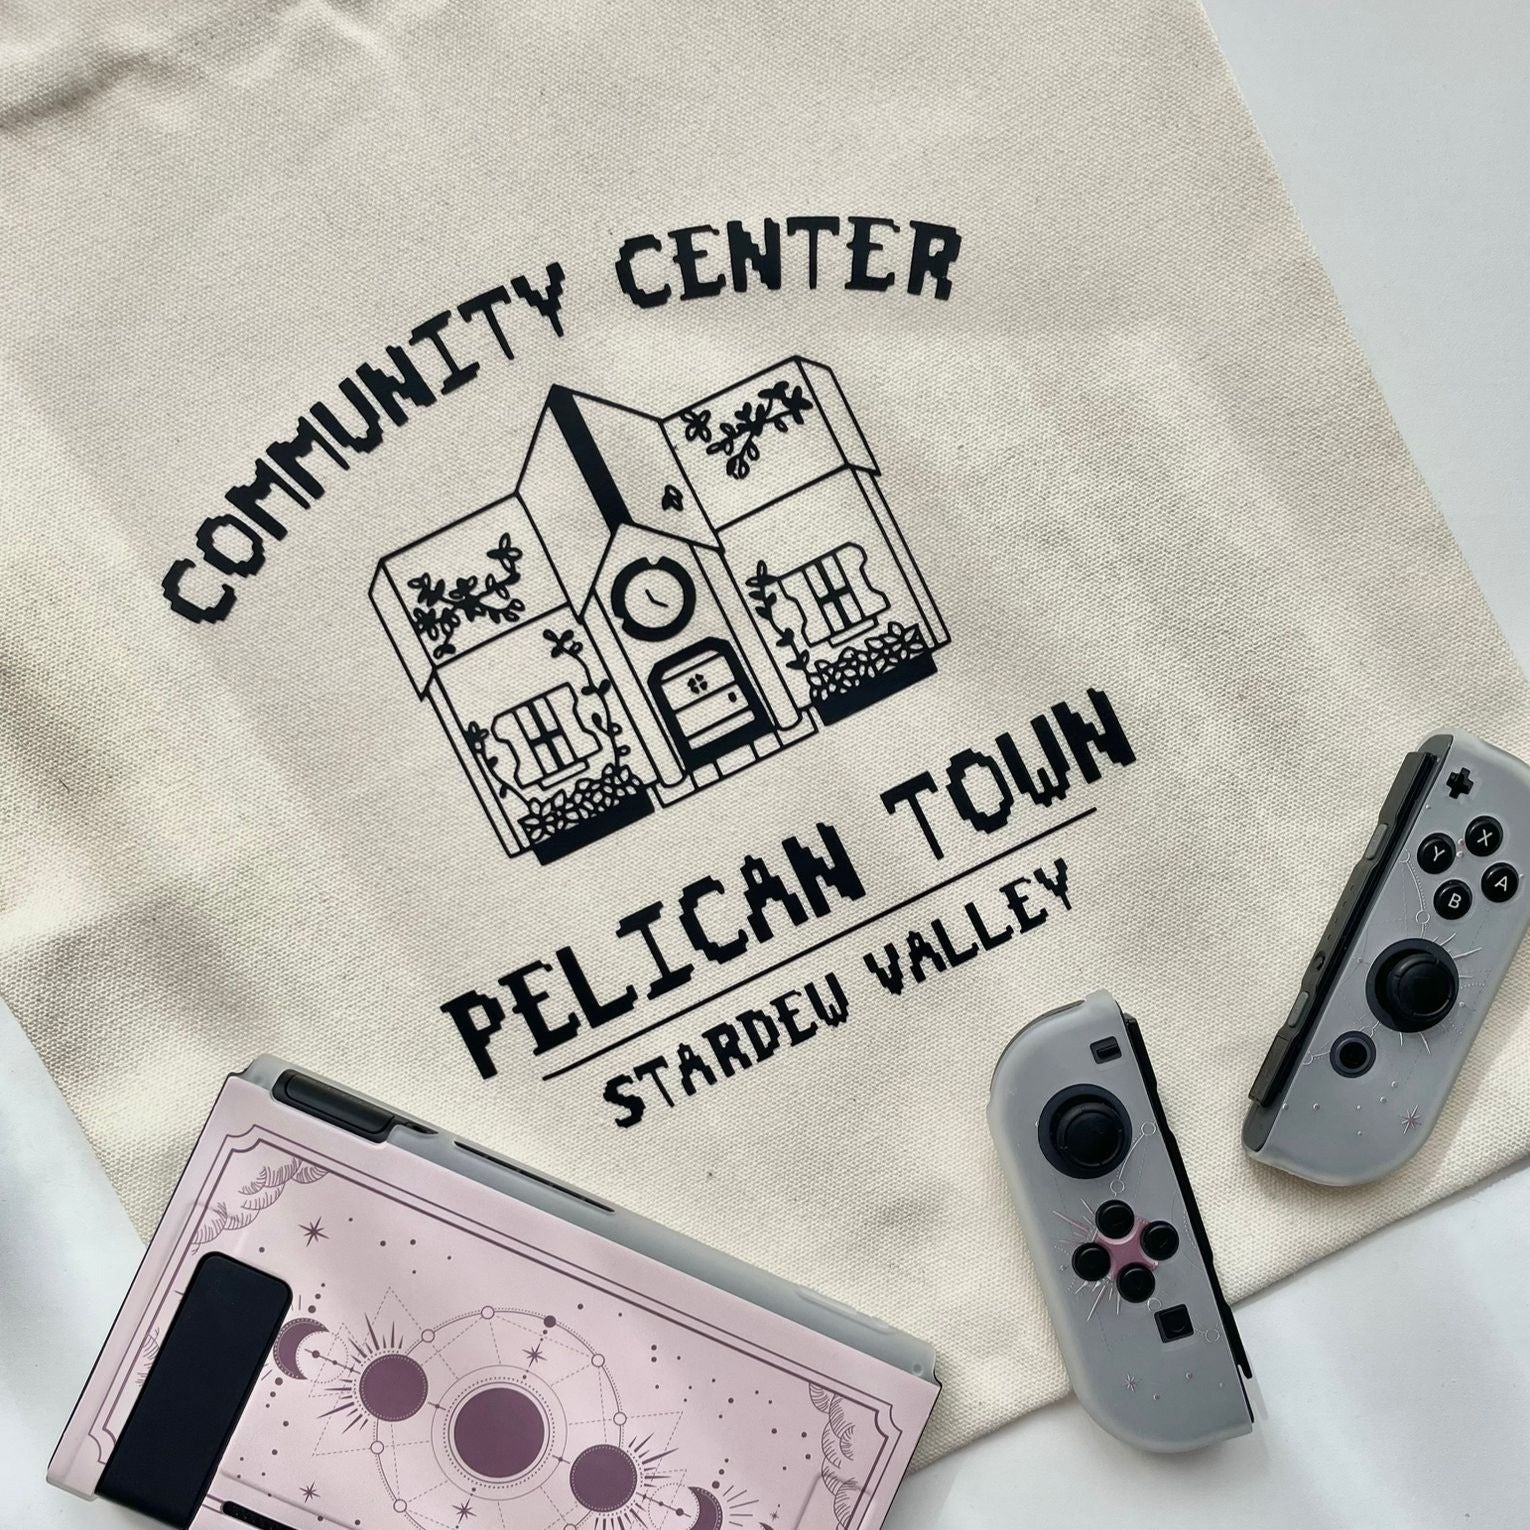 Pelican Town Tote Bag